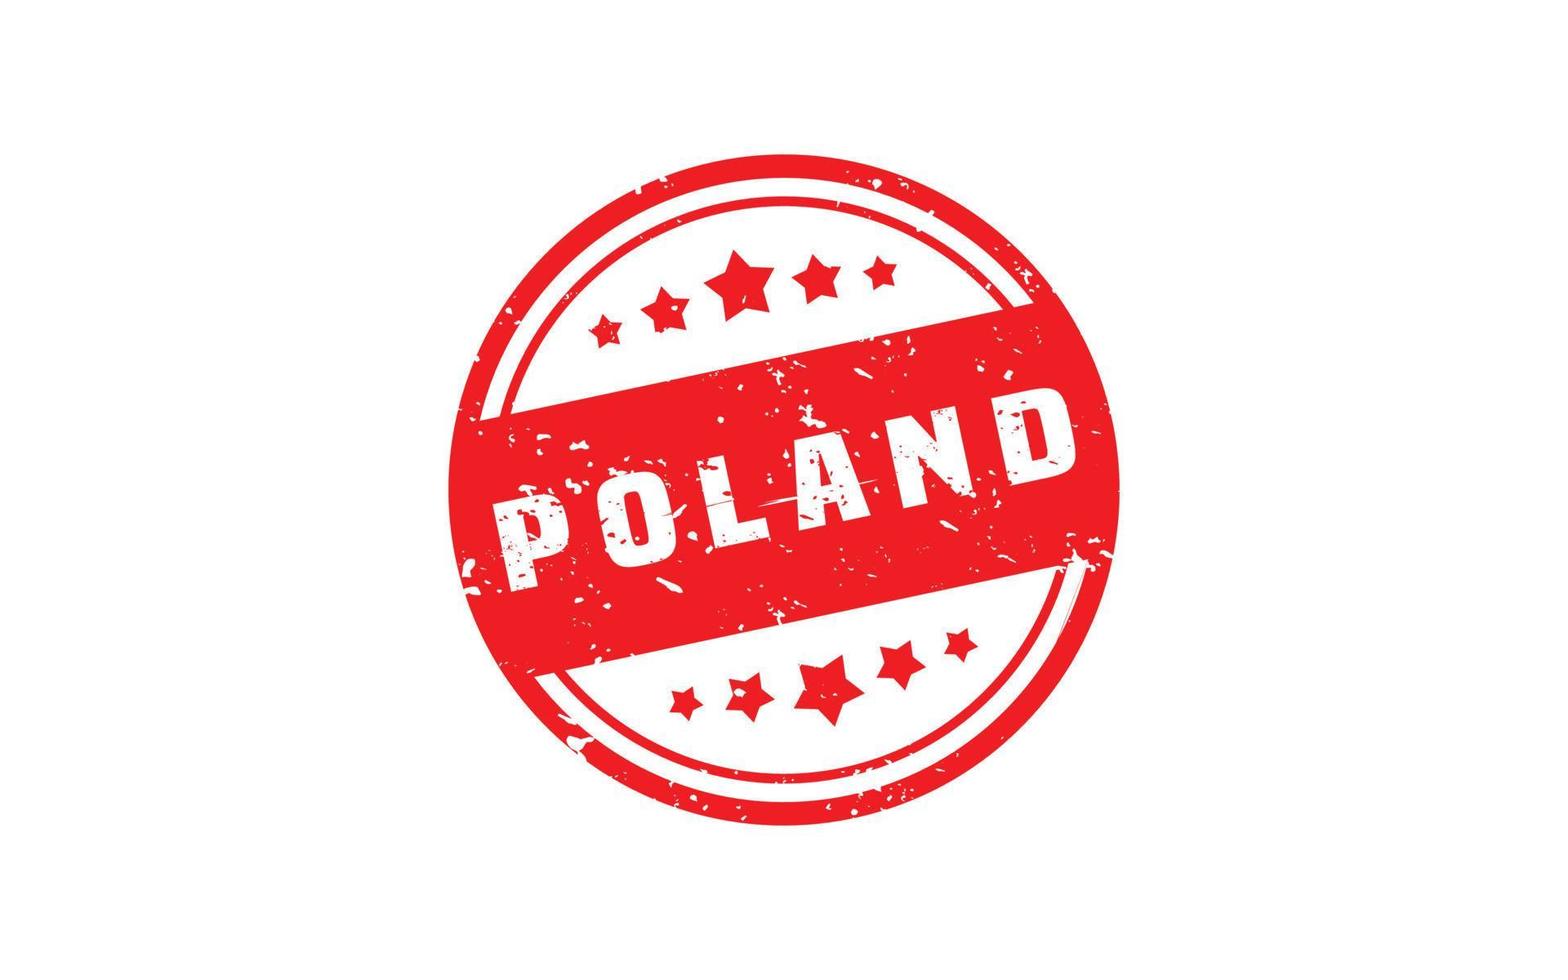 goma de sello de polonia con estilo grunge sobre fondo blanco vector